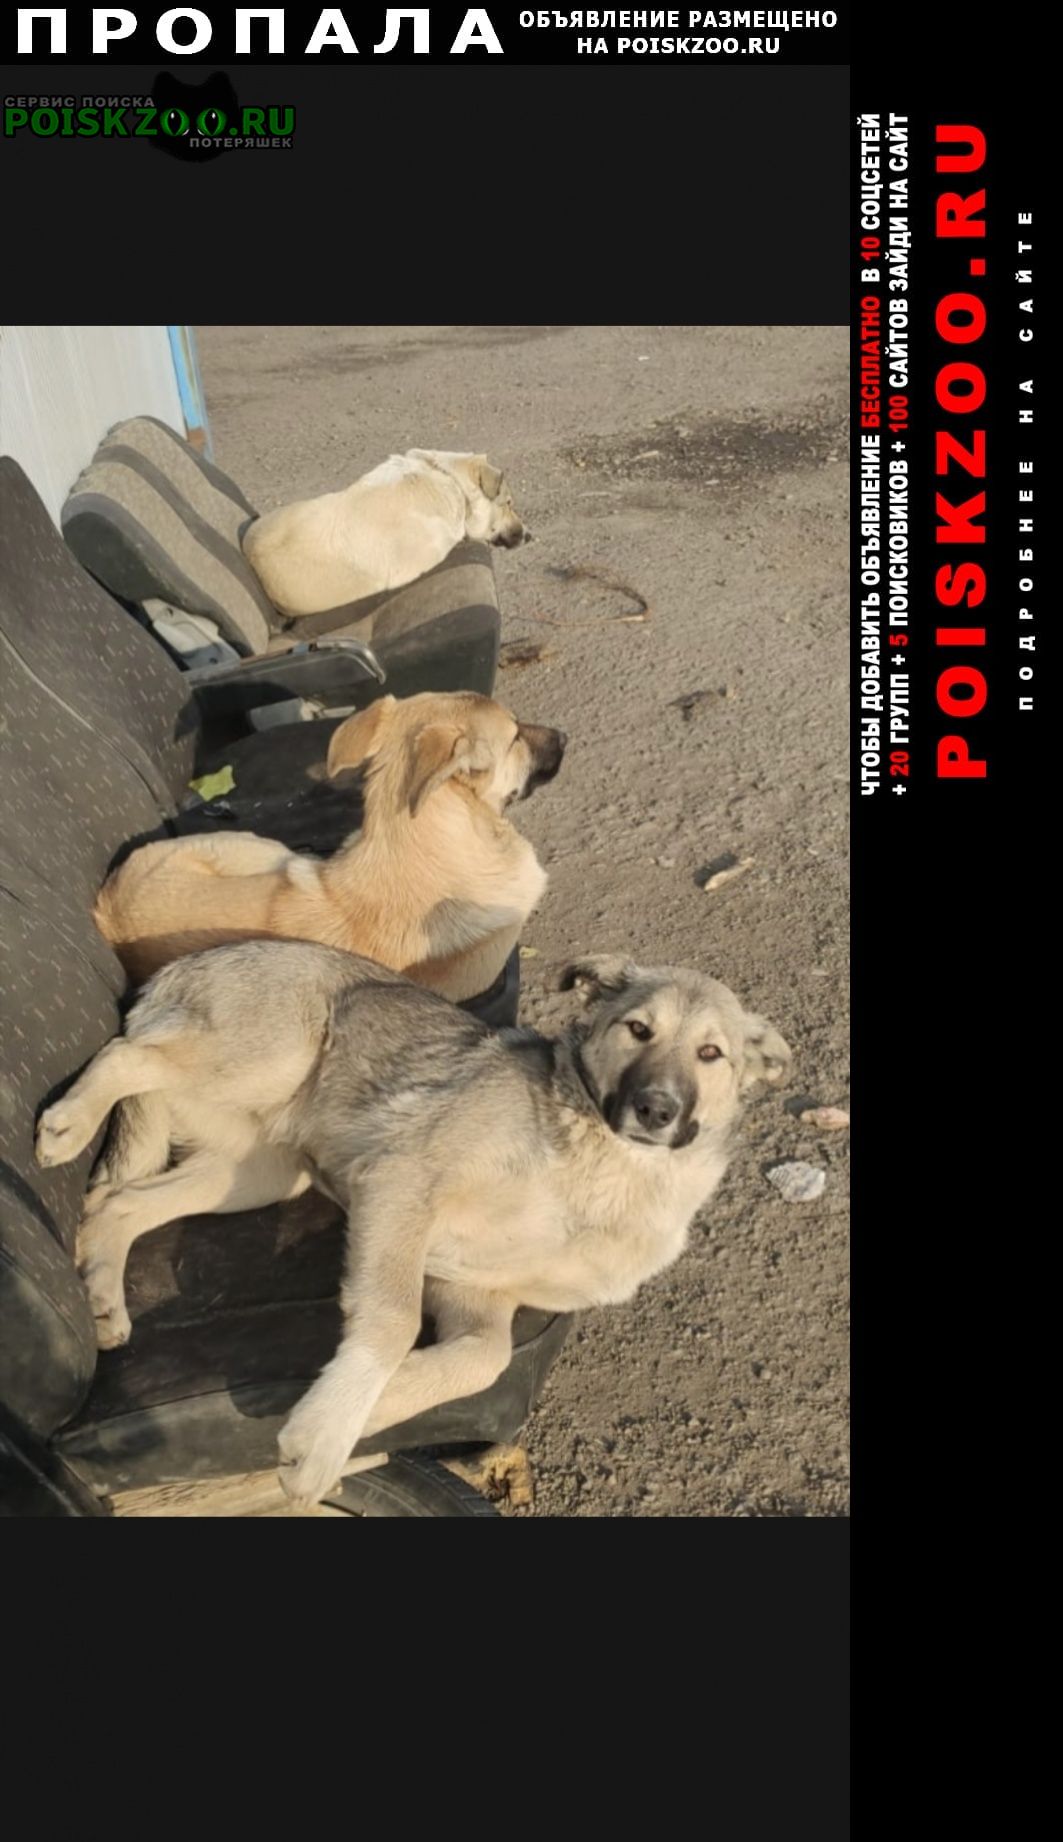 Москва Пропала собака потерялись 3 собаки